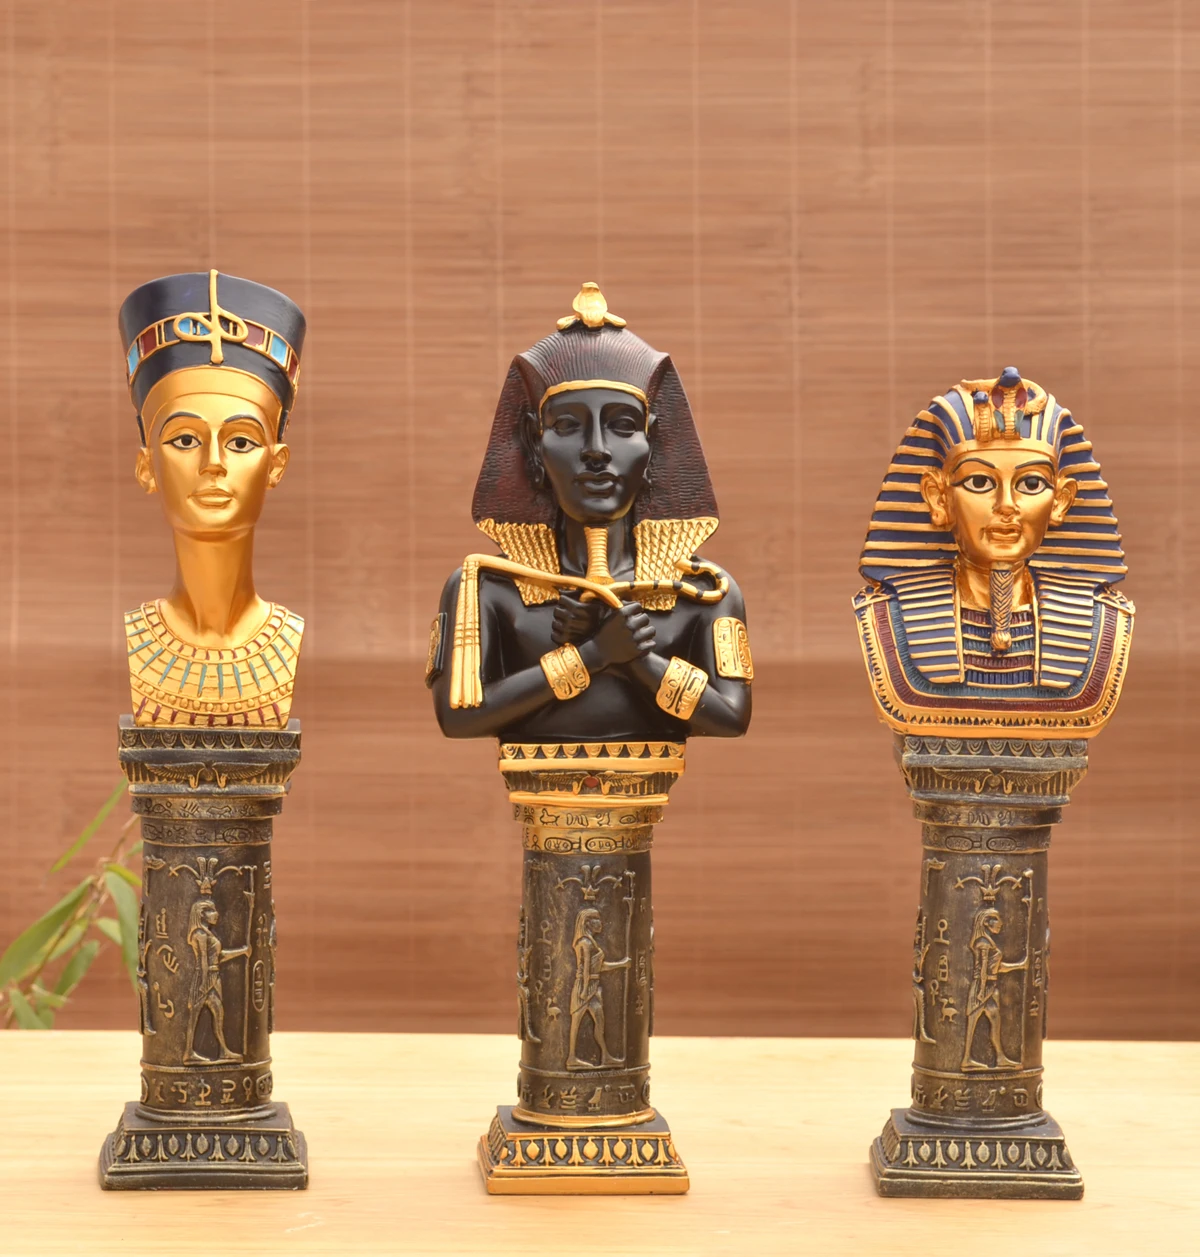 Египетские фараоны голова скульптура украшения тутанхамун Клеопатра Фараон король фигура статуя украшения для дома для отеля для бара дисплей